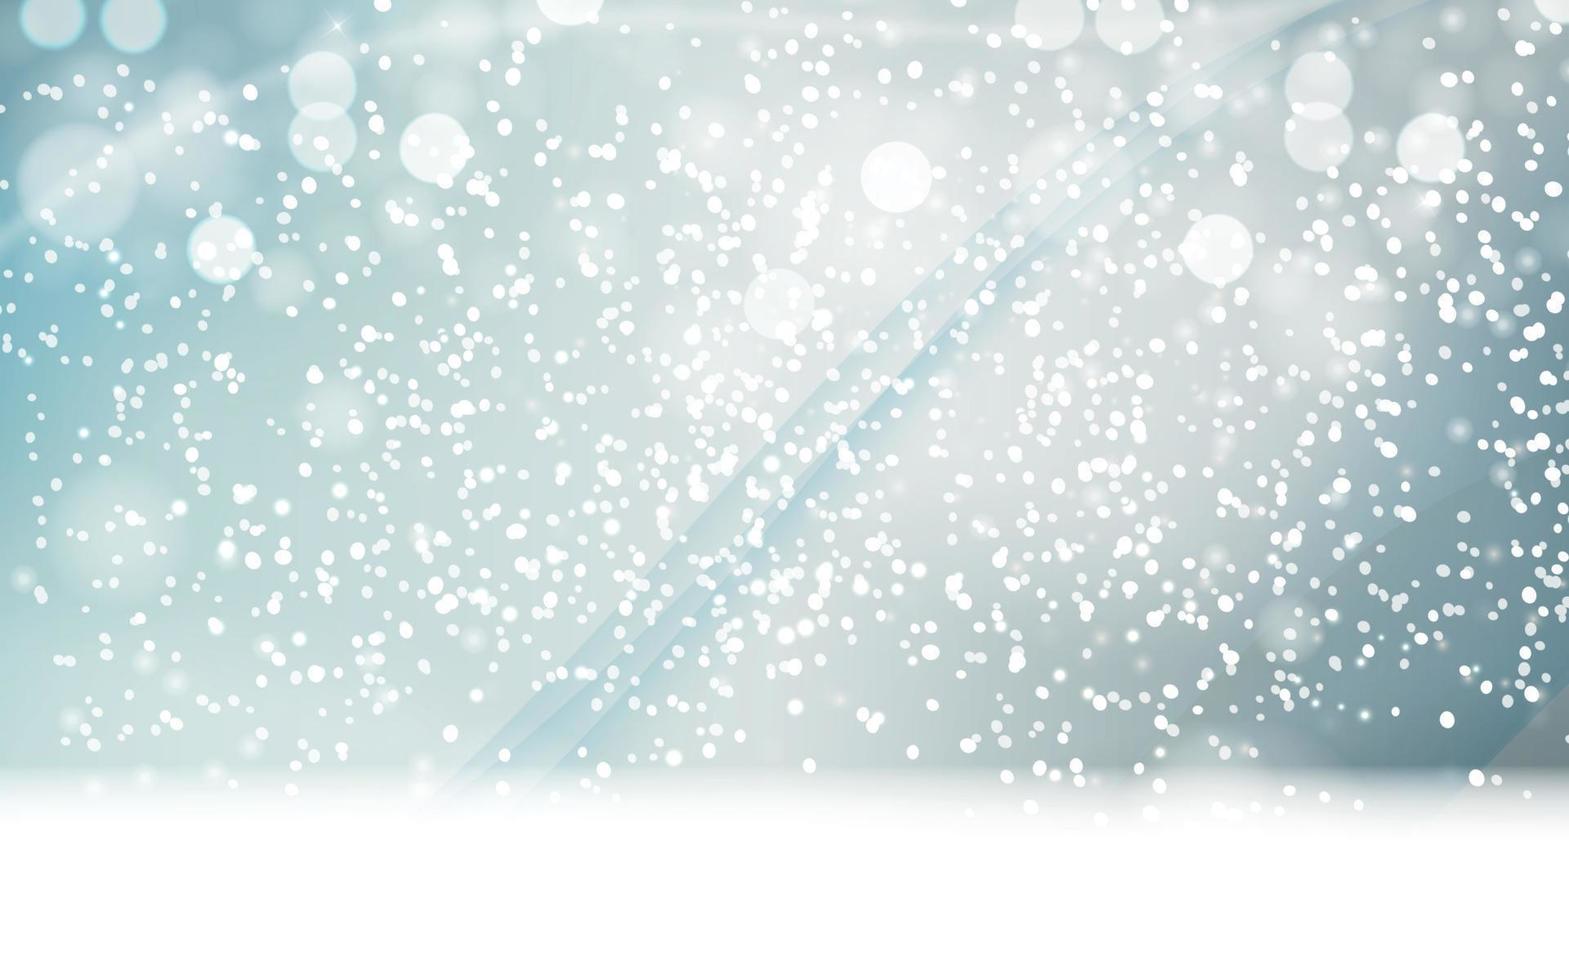 abstra hiver neige fond bleu illustration vectorielle vecteur